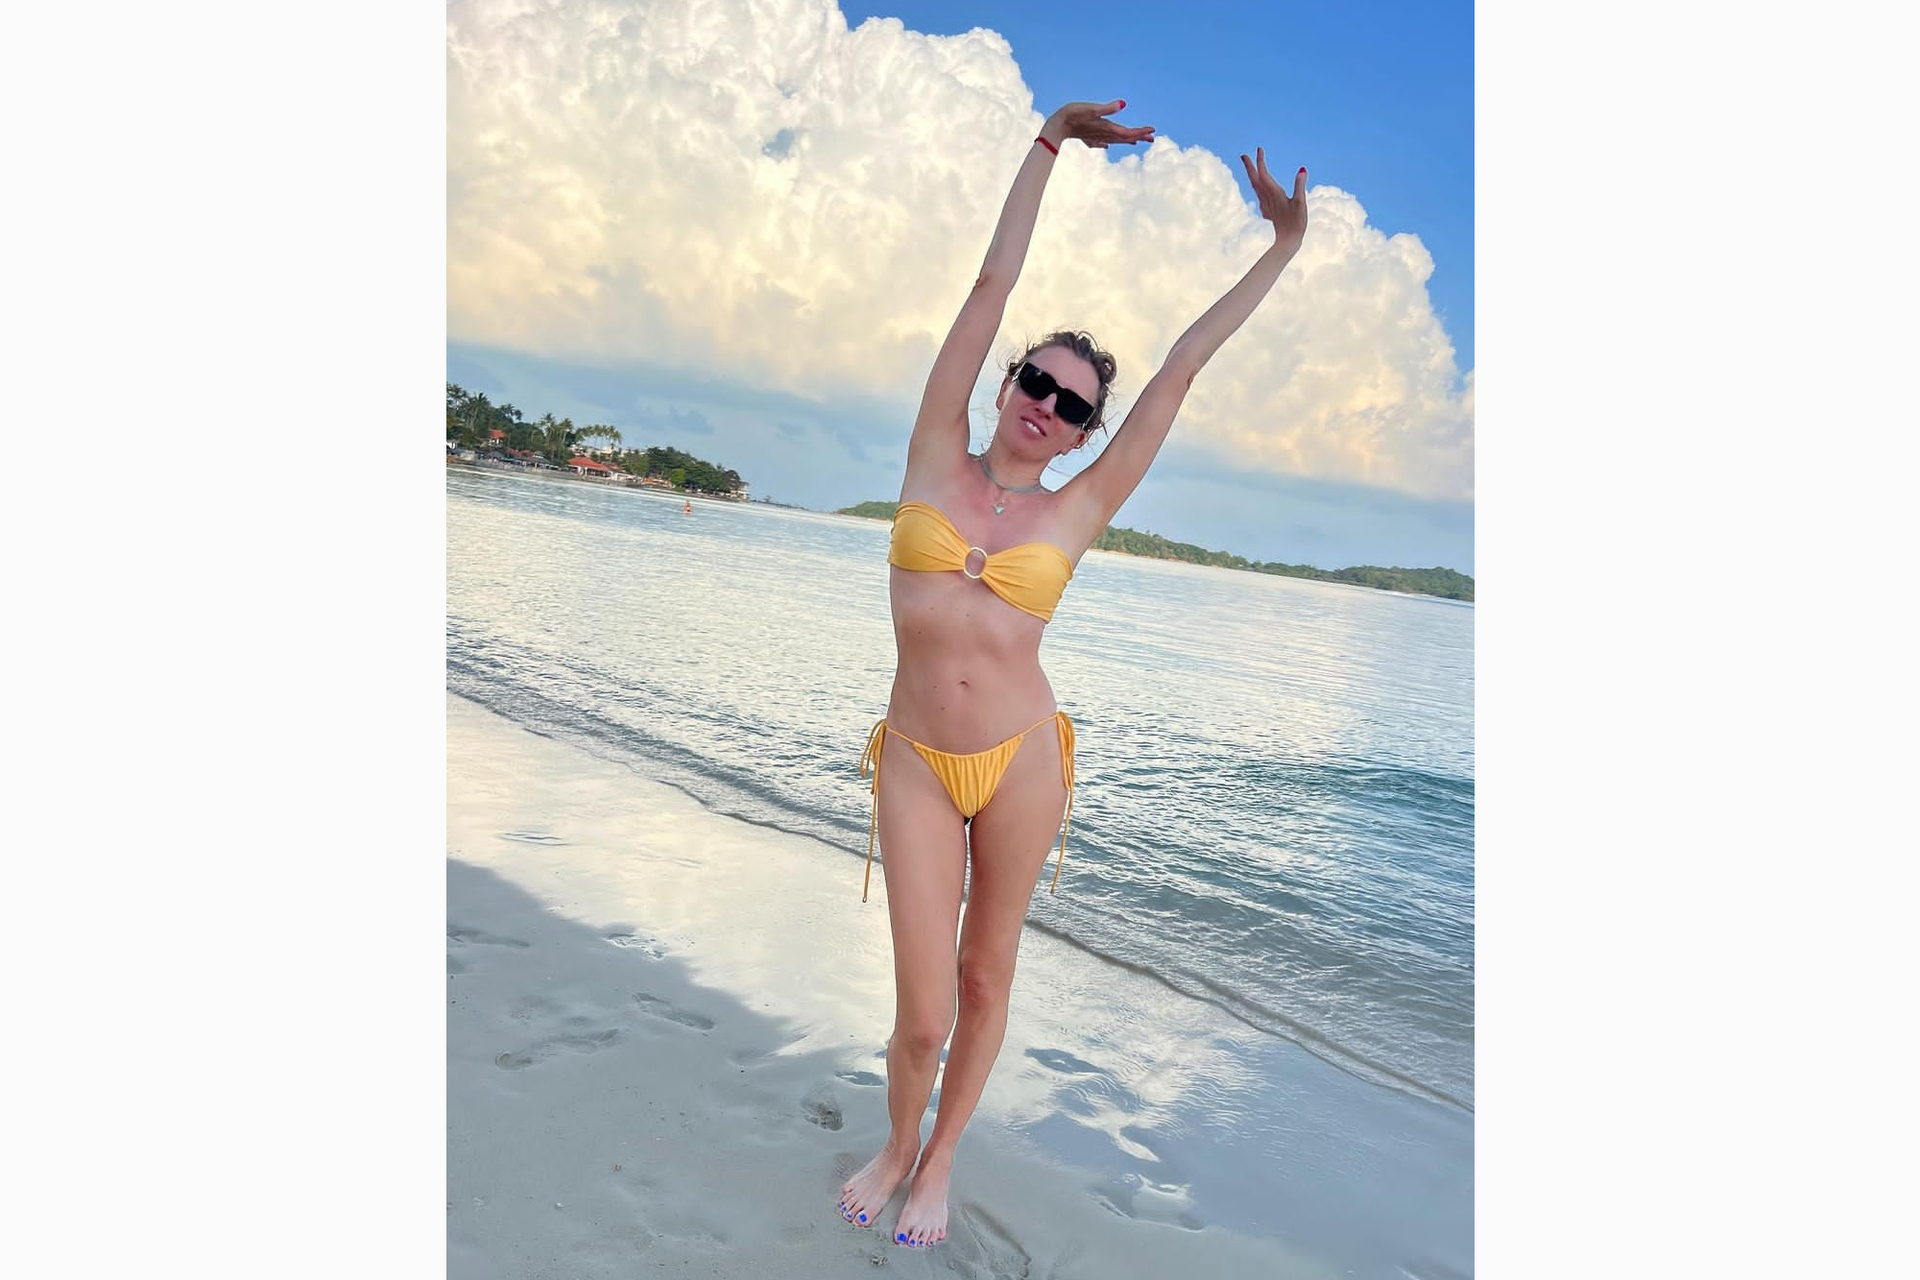 Завораживающая Виктория Асмус впечатляет своими великолепными формами в пляжном купальнике и не оставляет равнодушными ни одну душу